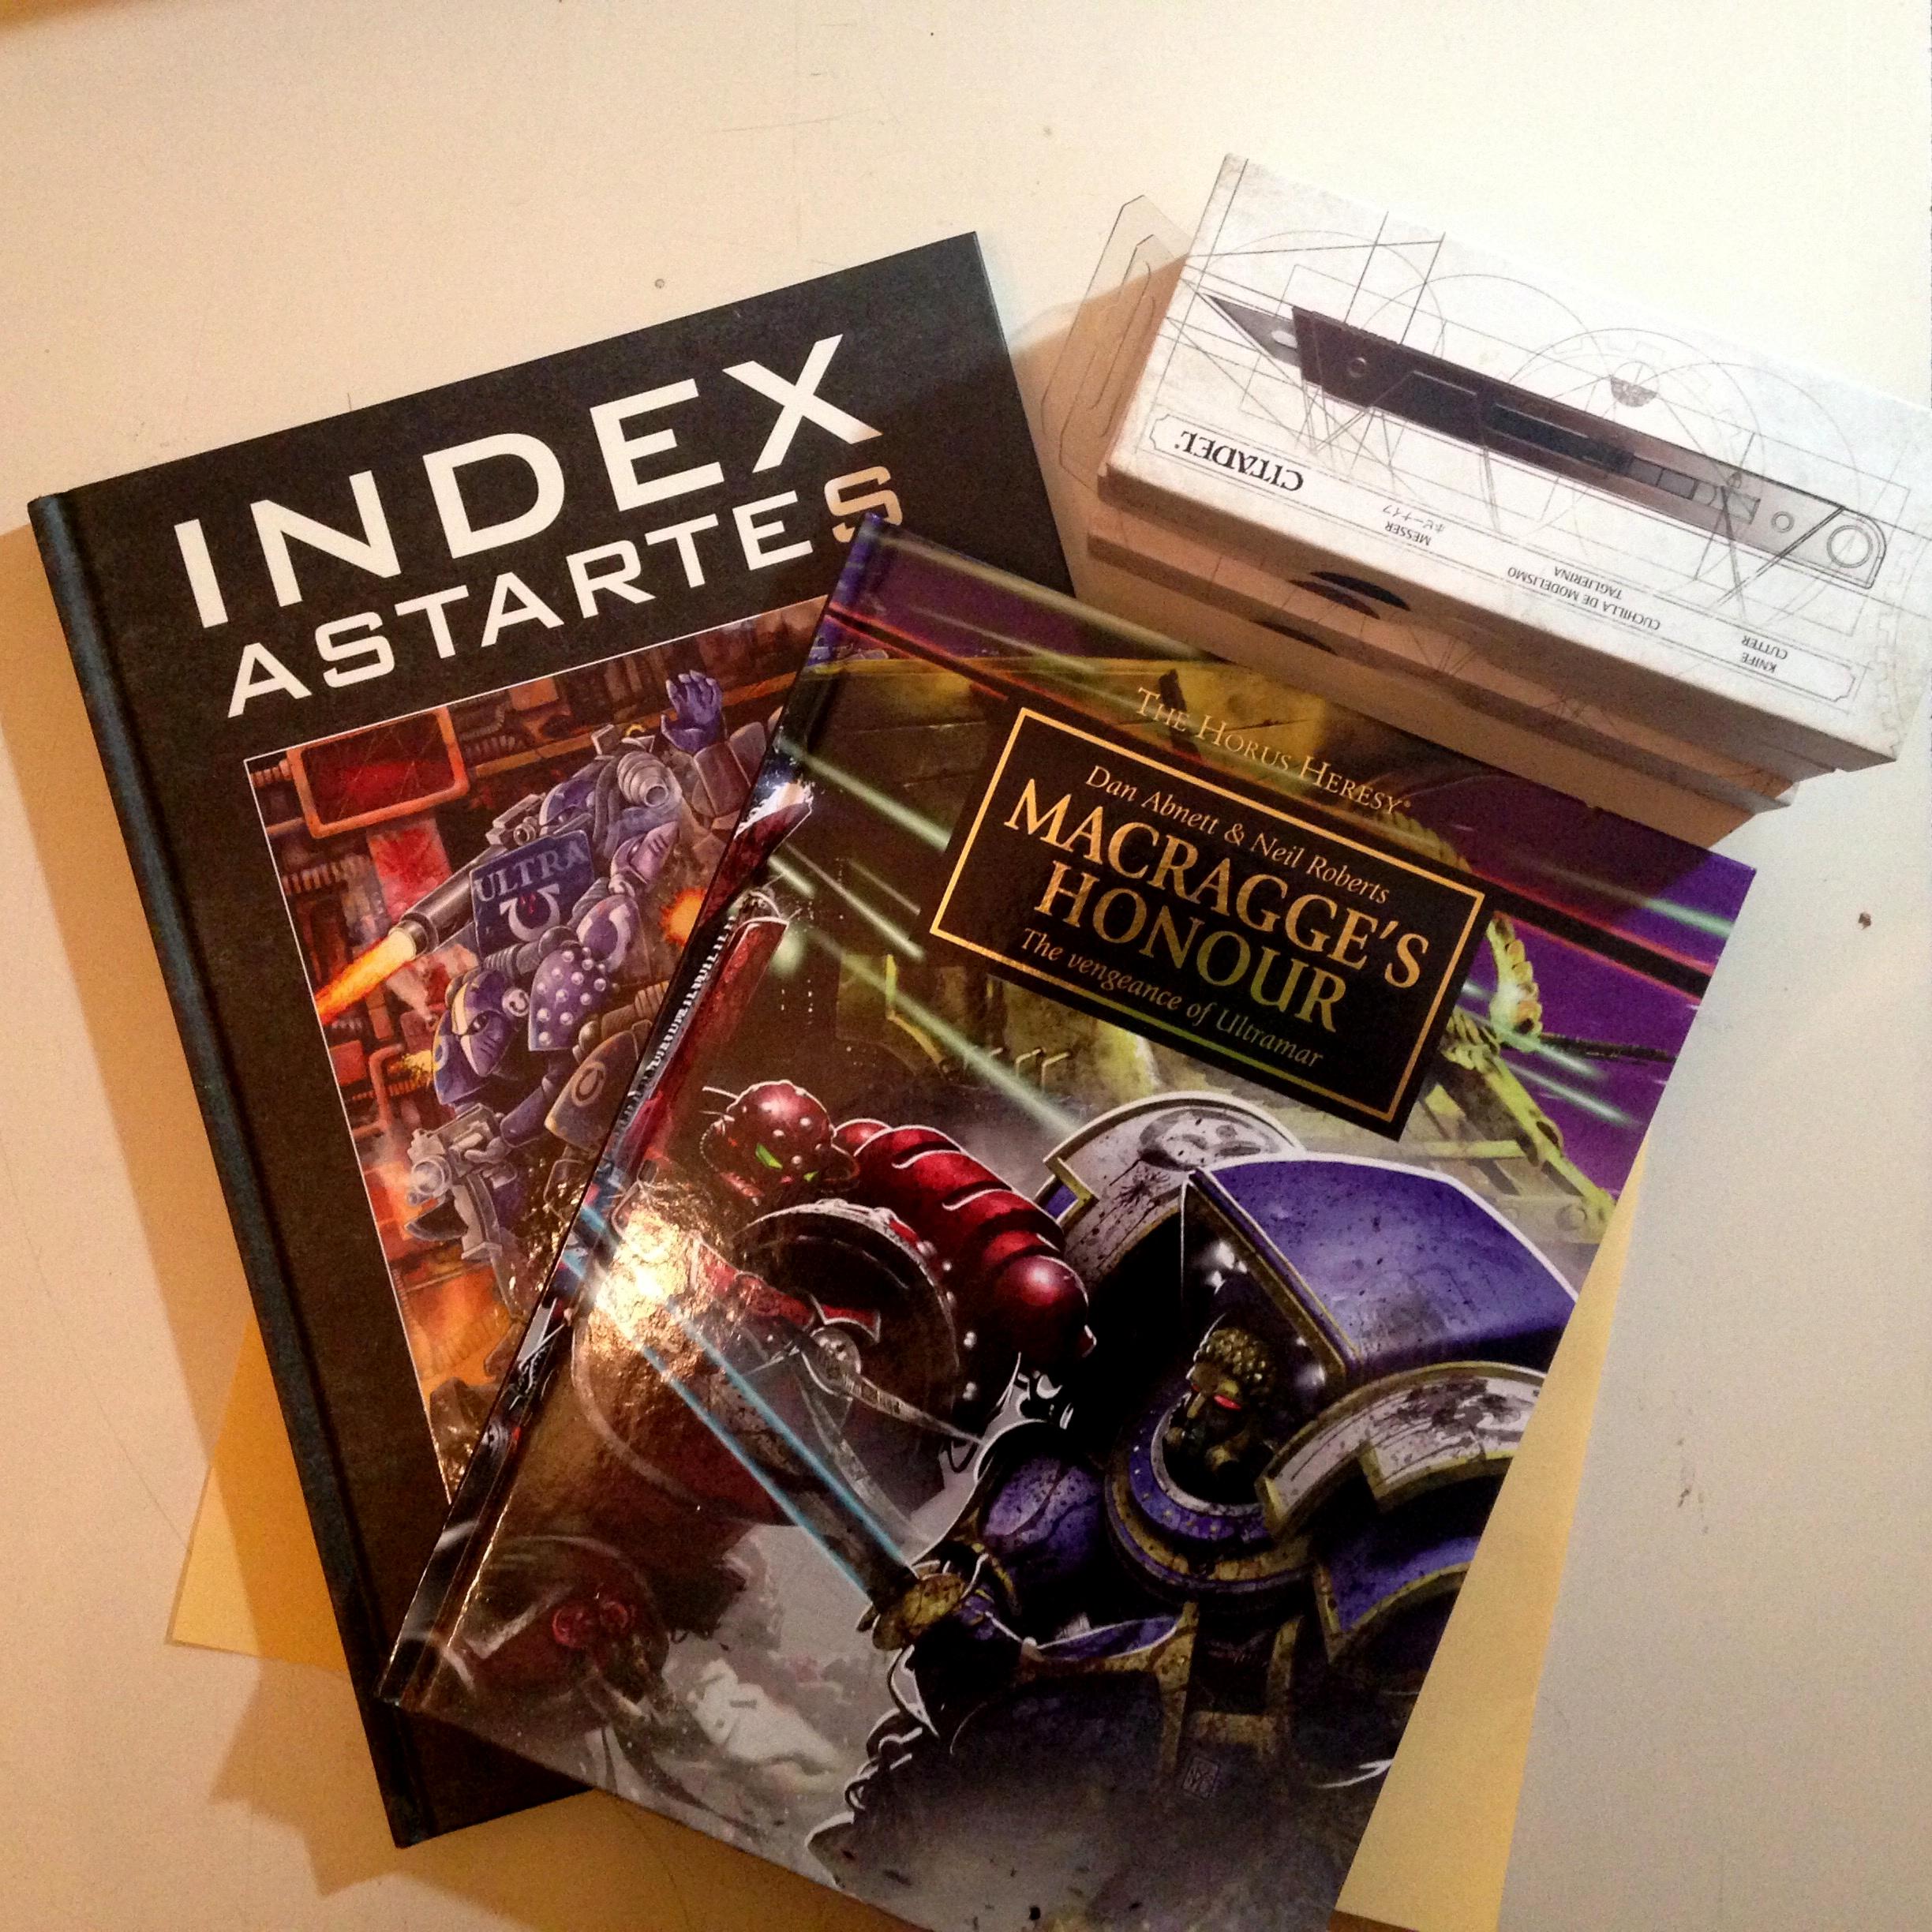 Index Astartes